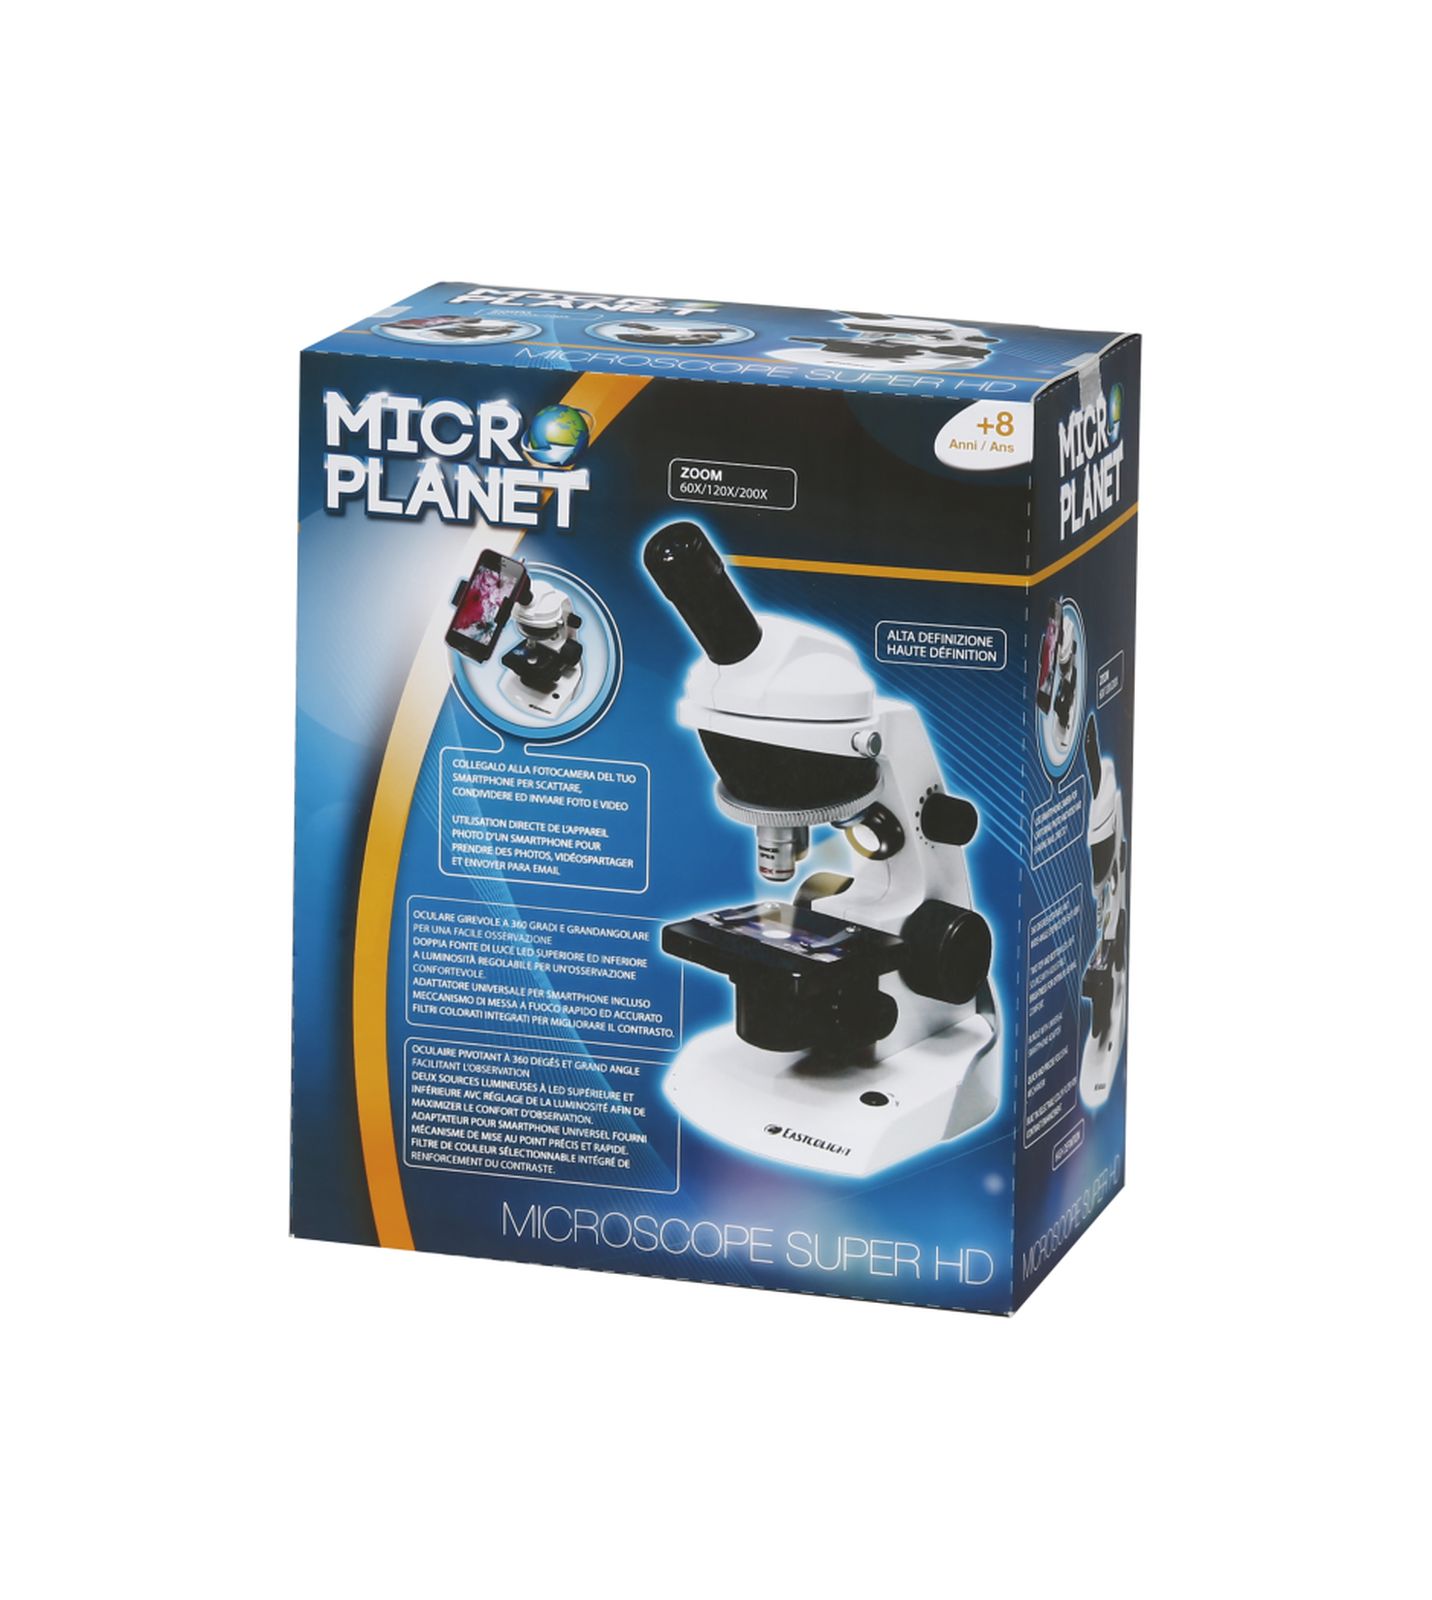 Microscopio Portatile di Hape Toys